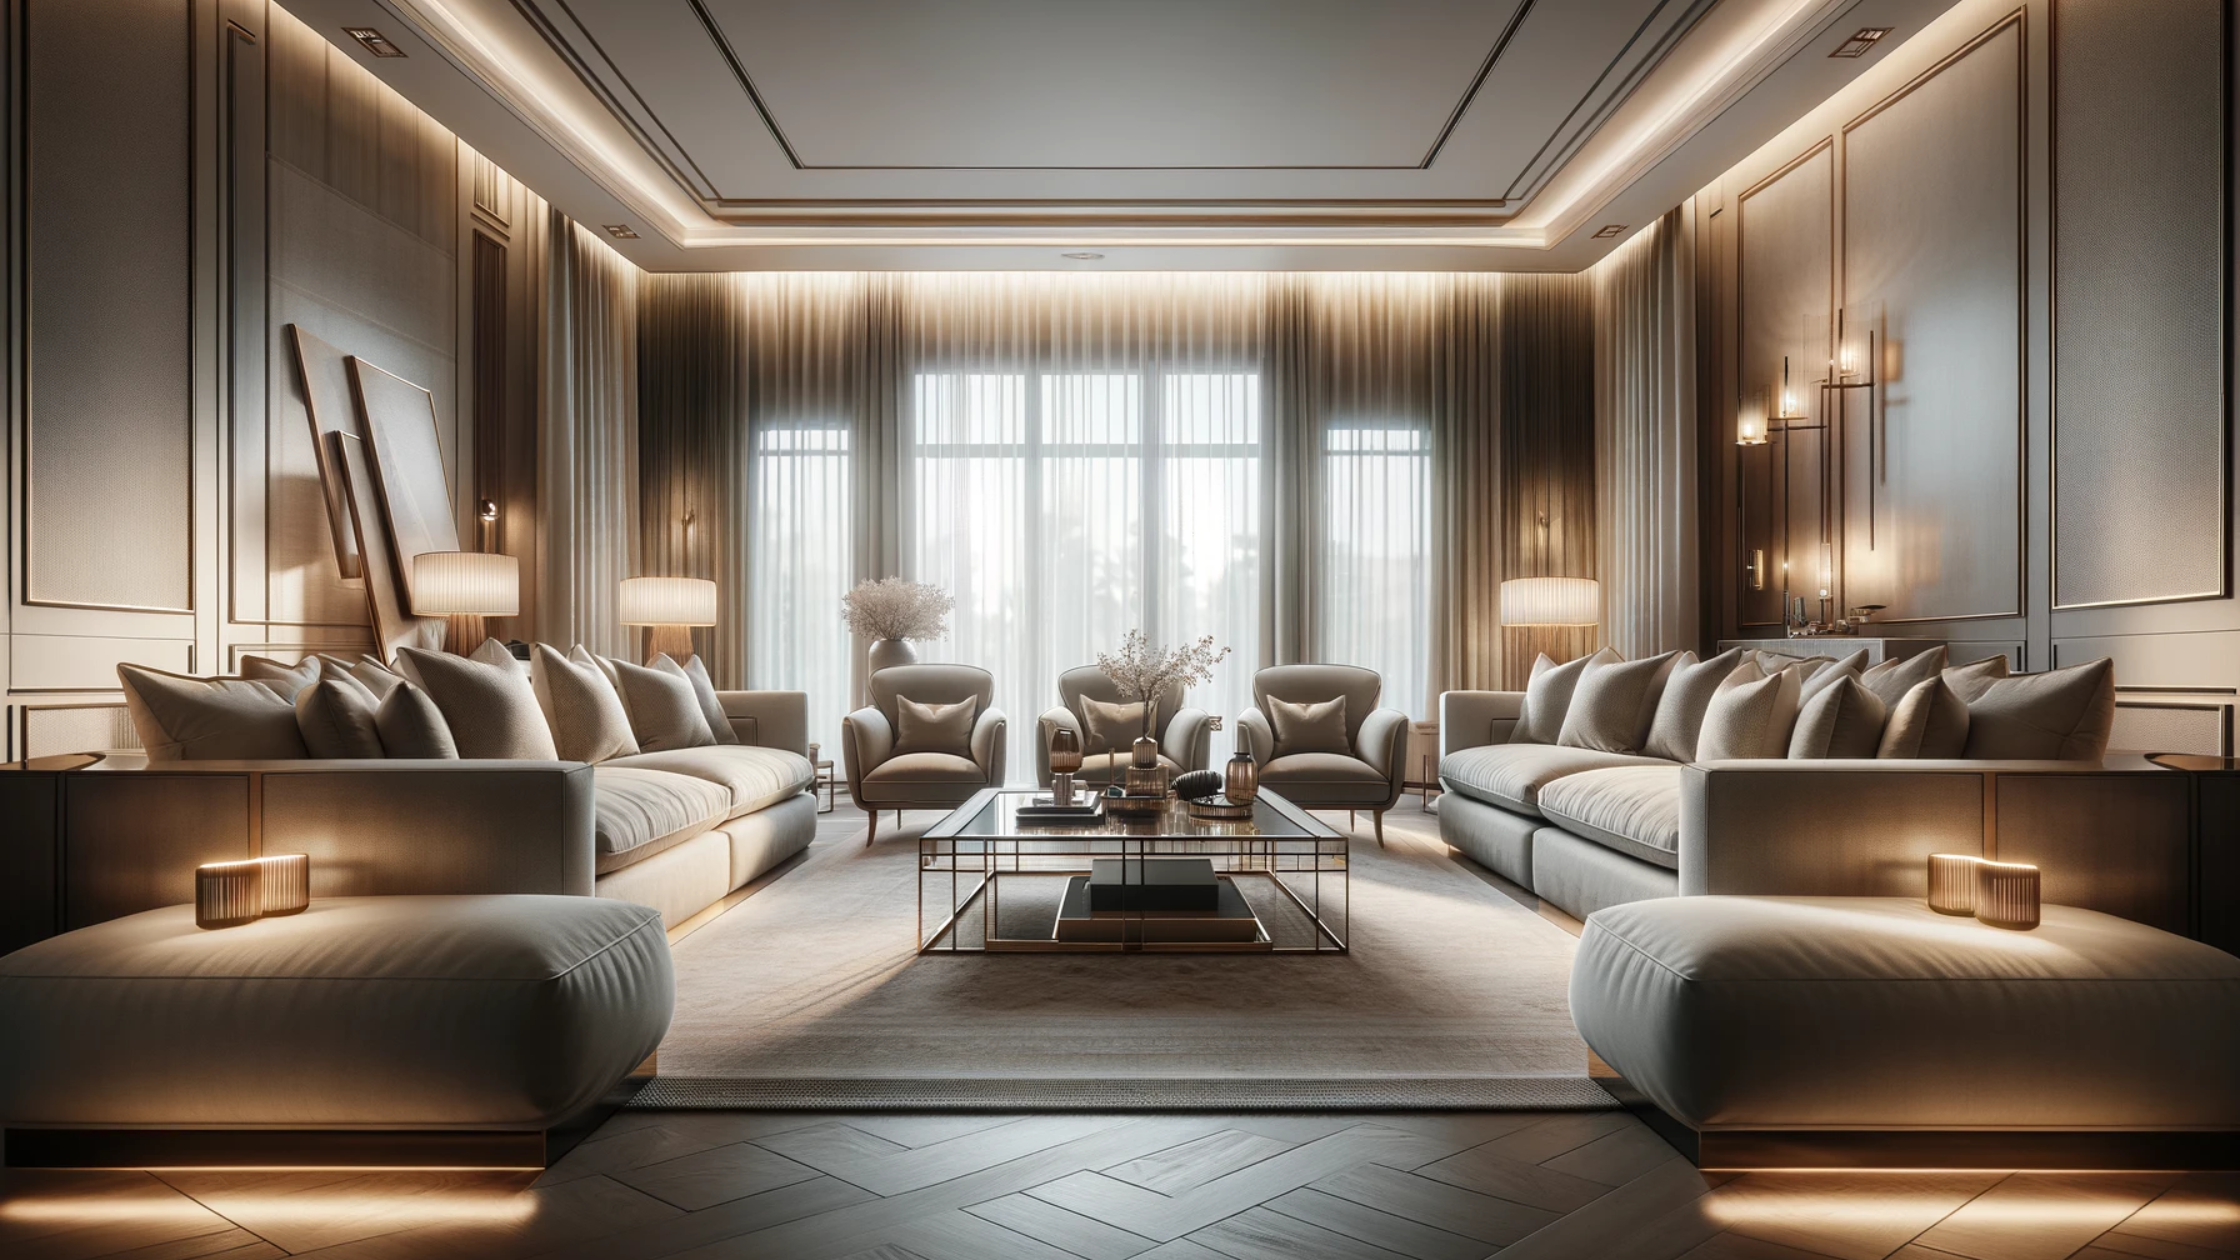 SJ DESIGN CONSULTANTS - NEW DELHI - The Crucial Role of Furniture in Interior Design